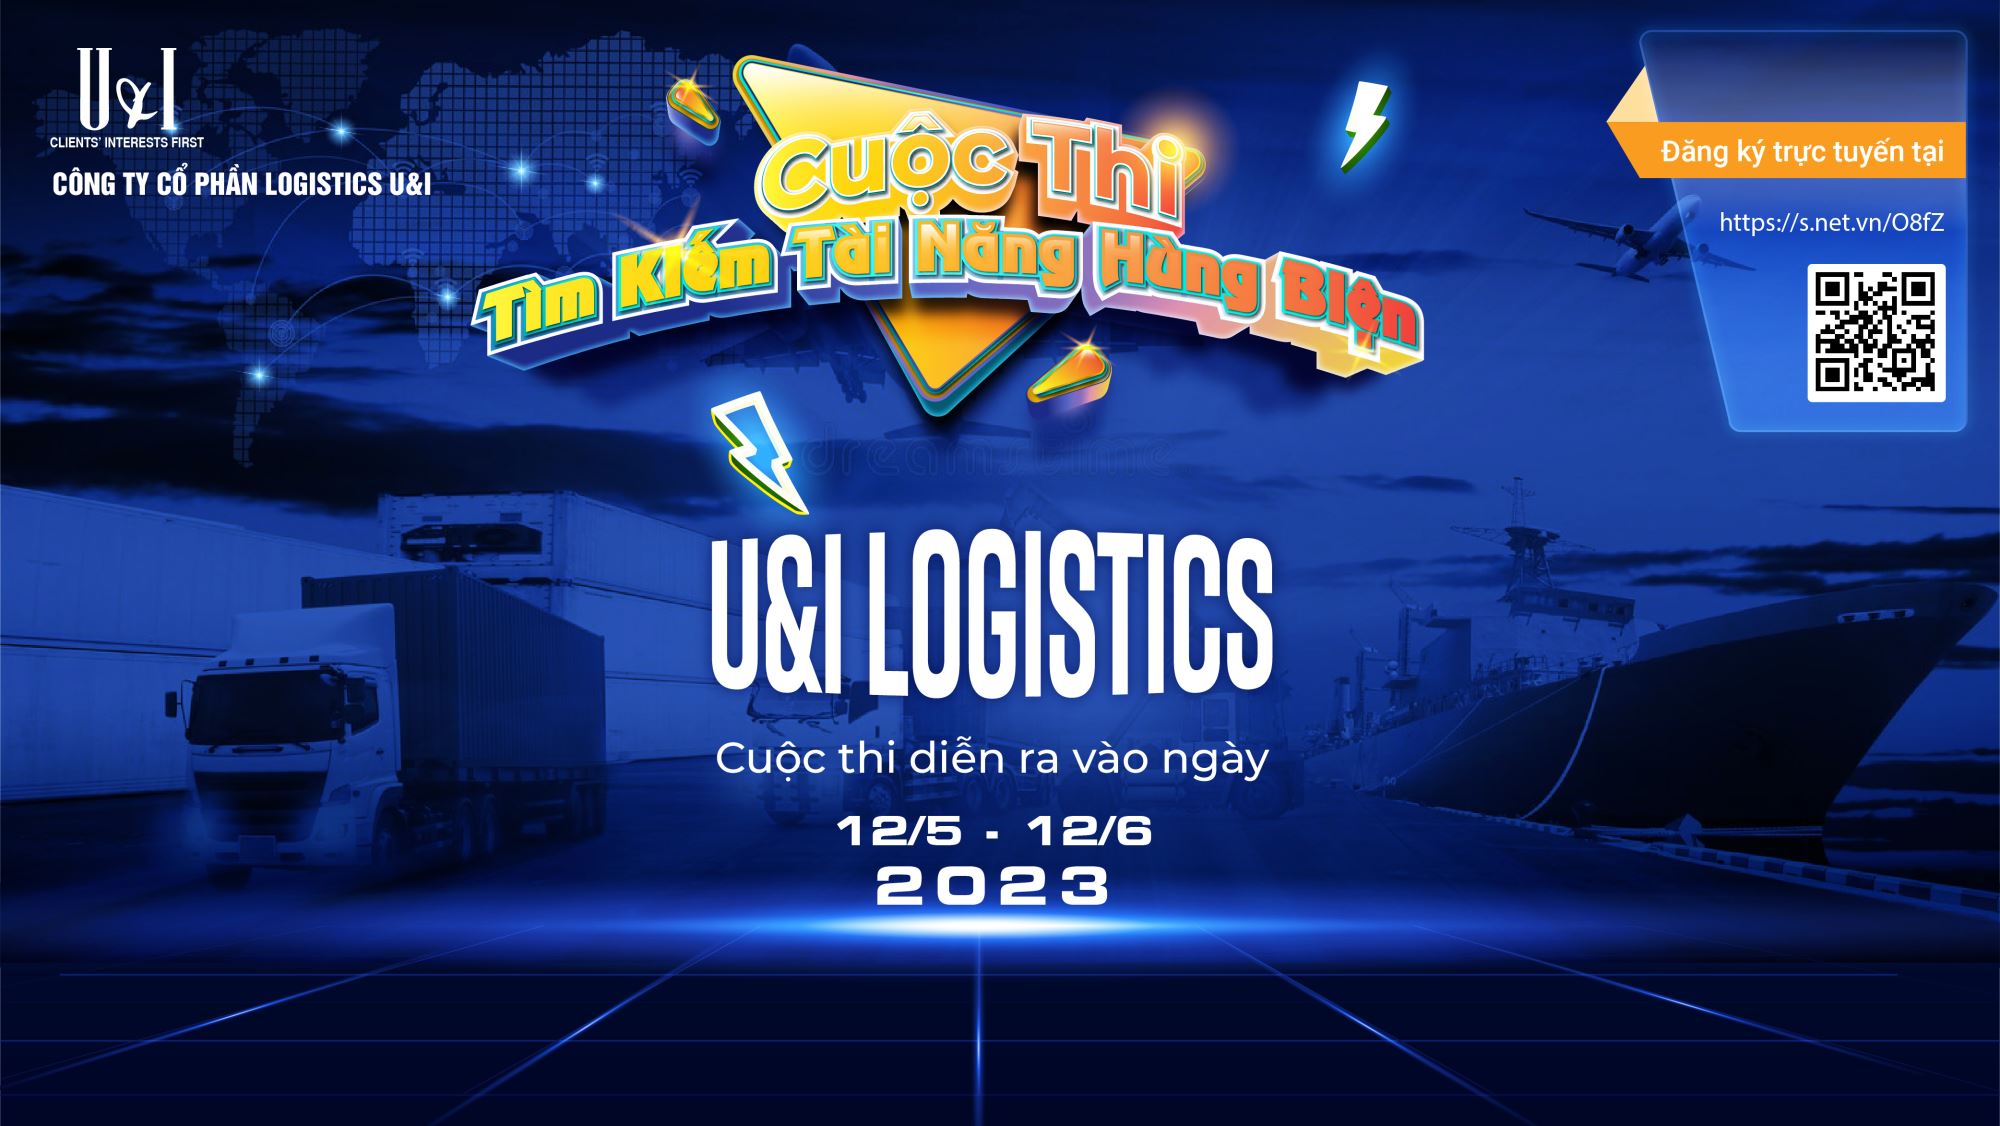 Cuộc Thi Tìm Kiếm Tài Năng Hùng Biện U&I Logistics 2023